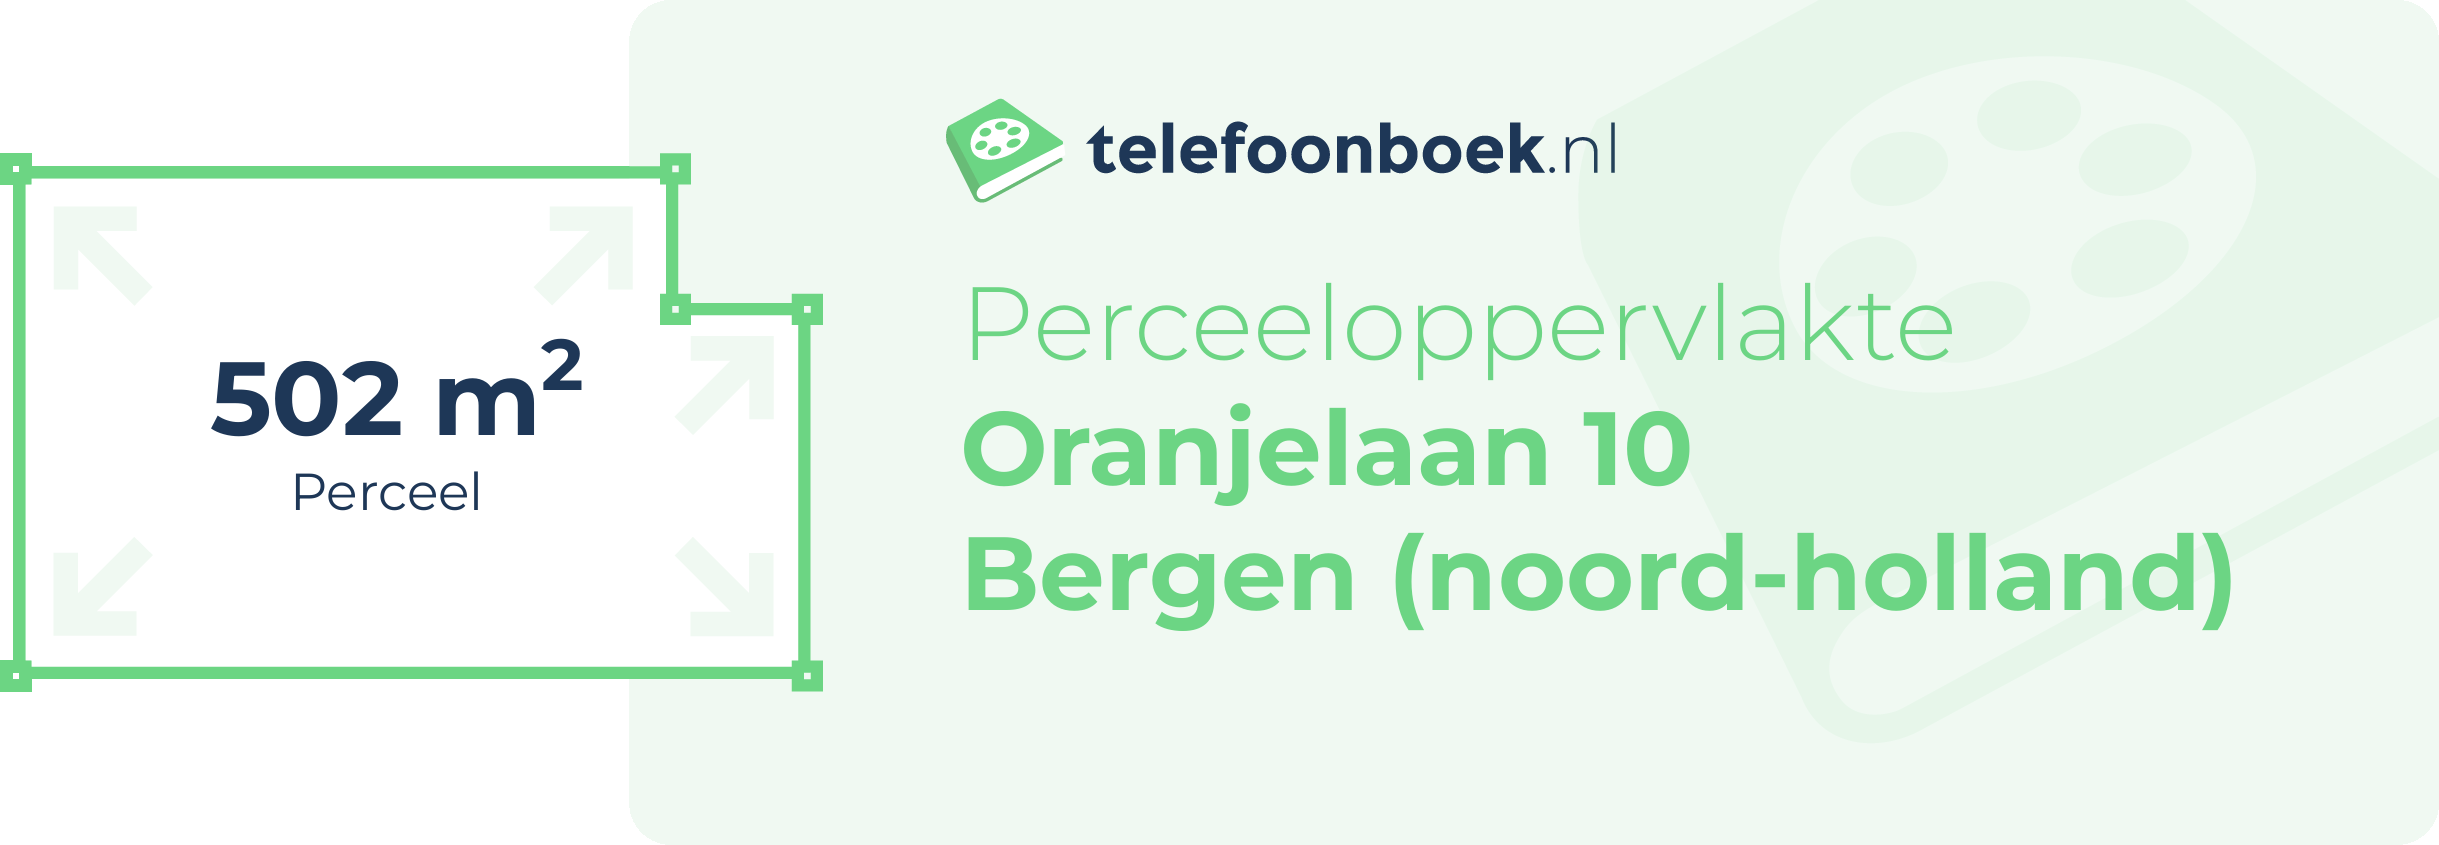 Perceeloppervlakte Oranjelaan 10 Bergen (Noord-Holland)